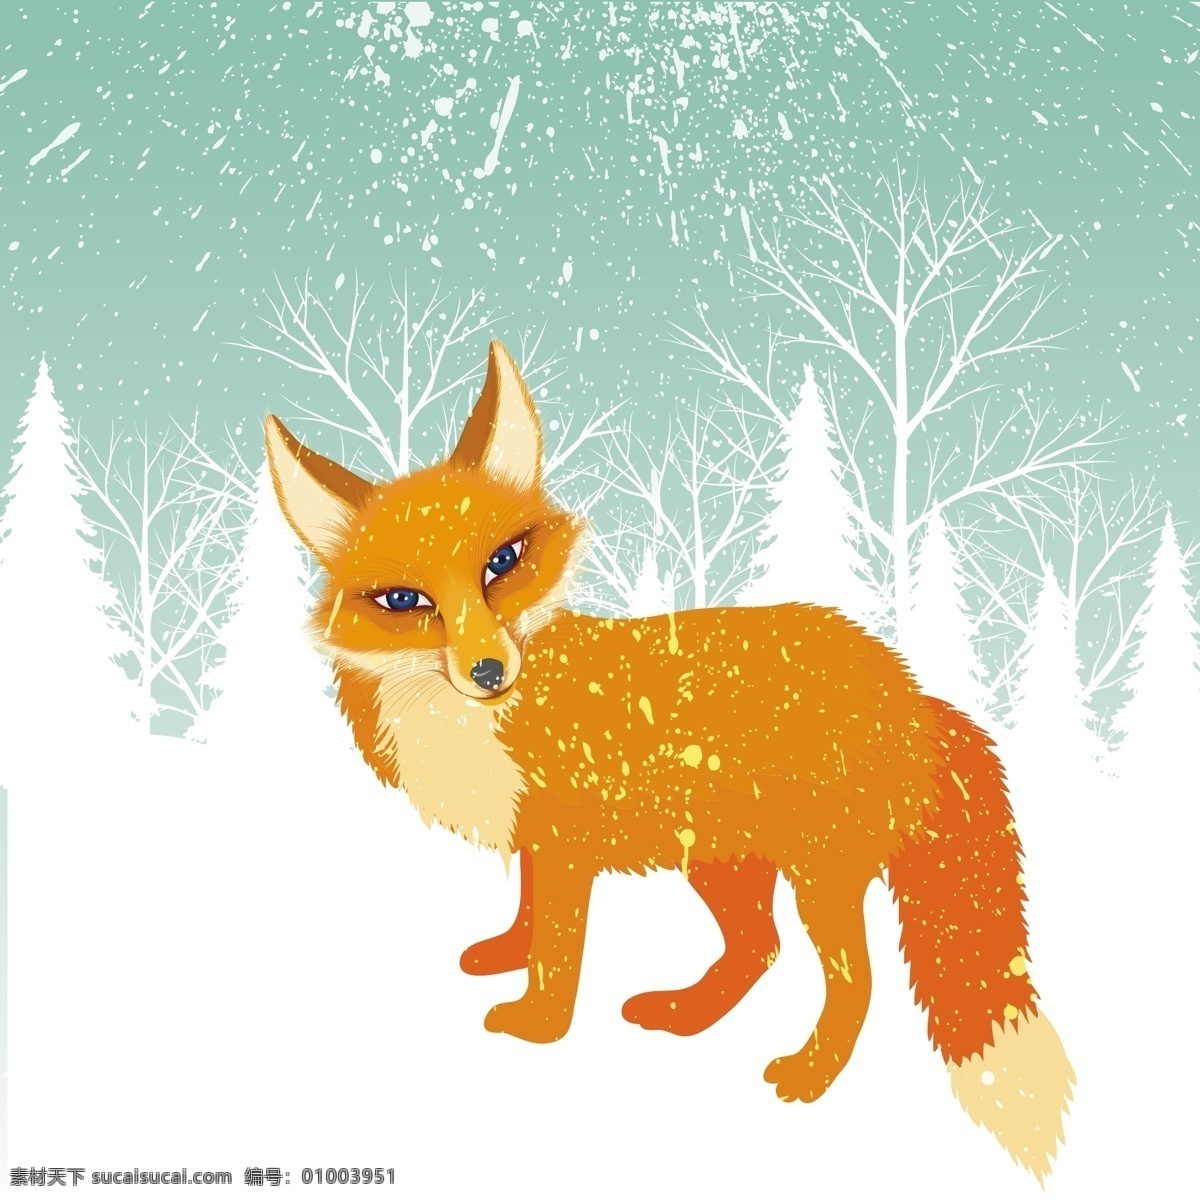 冬季 雪地 里 橘 色 狐狸 背景 图 广告背景 广告 背景素材 底纹背景 橘色 动物 可爱 漂亮 白色